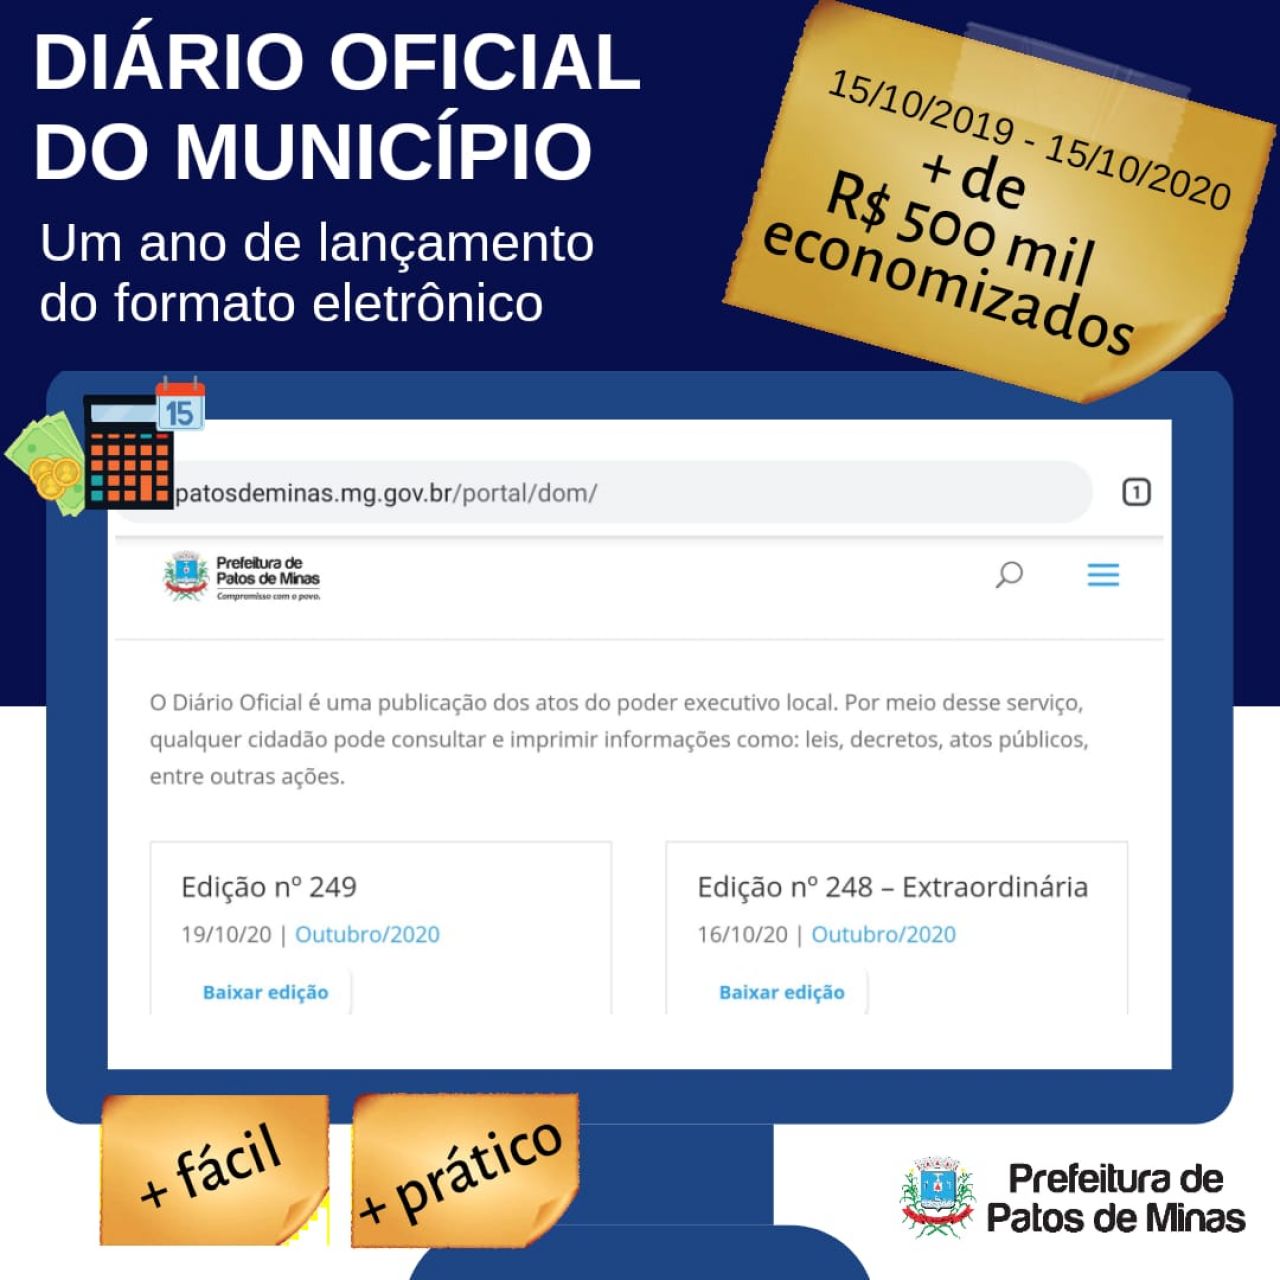 Diário Oficial do Município completa um ano e representa economia aos cofres públicos